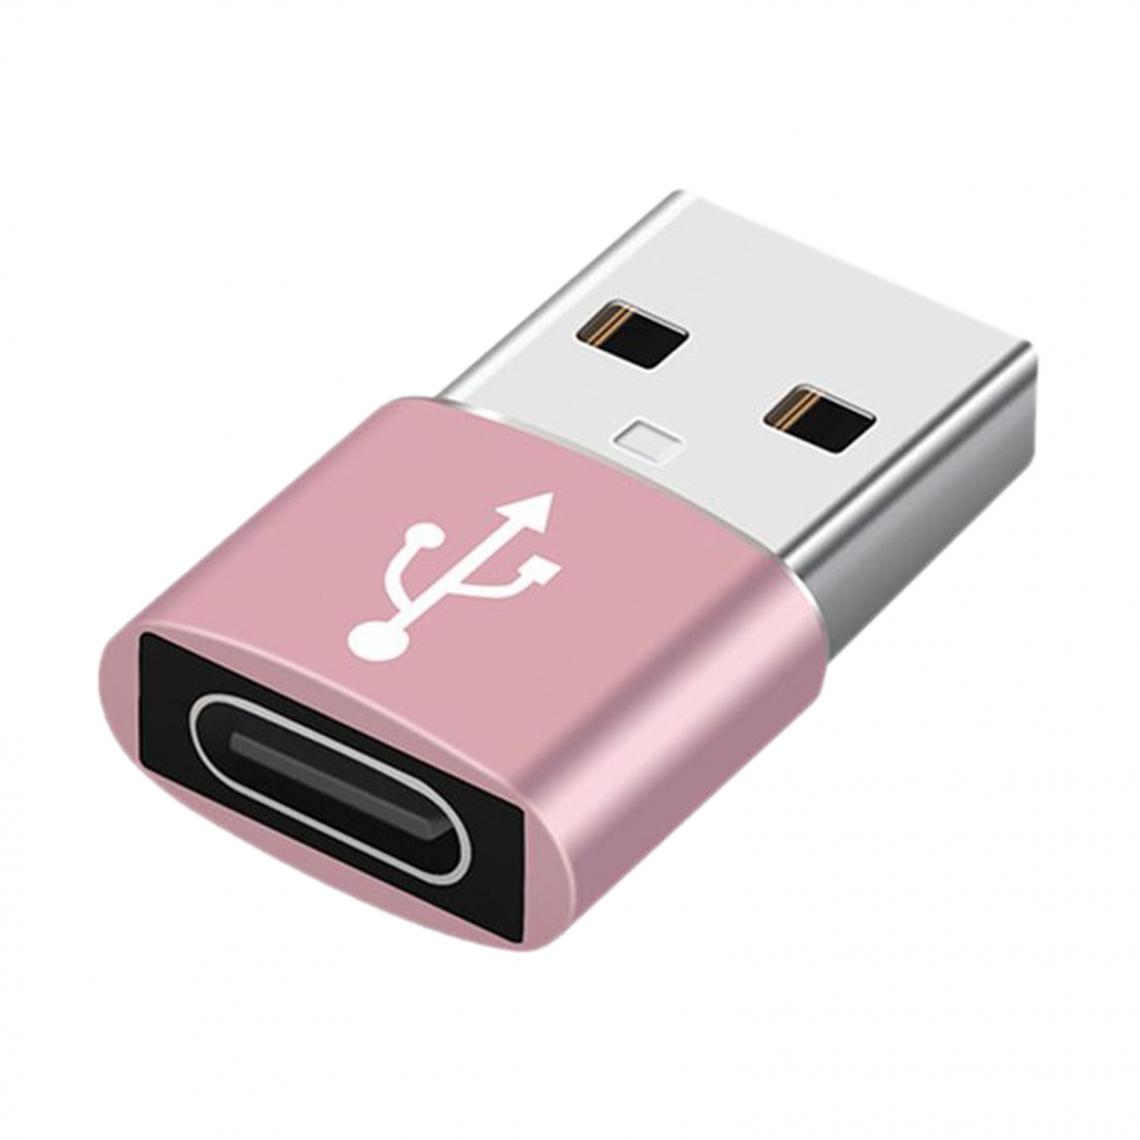 marque generique - Adaptateur De Convertisseur USB Vers USB C Multicolore 2 En 1 Pour Transfert De Données PC Portable Rouge - Hub